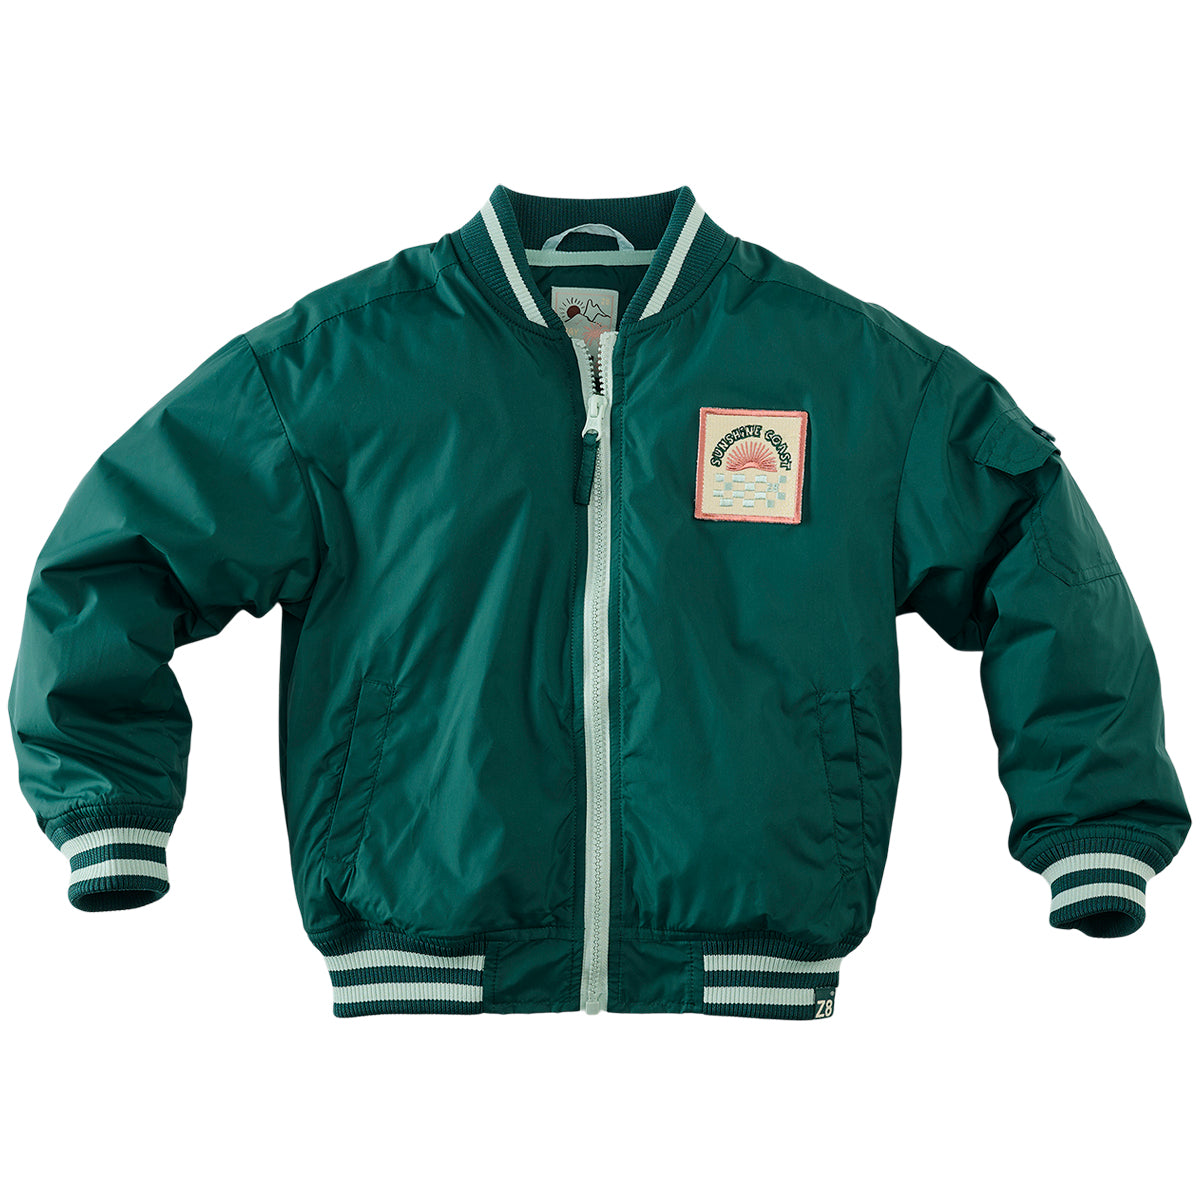 Jongens Summer jacket Nero van Z8 in de kleur Wild woods in maat 140-146.